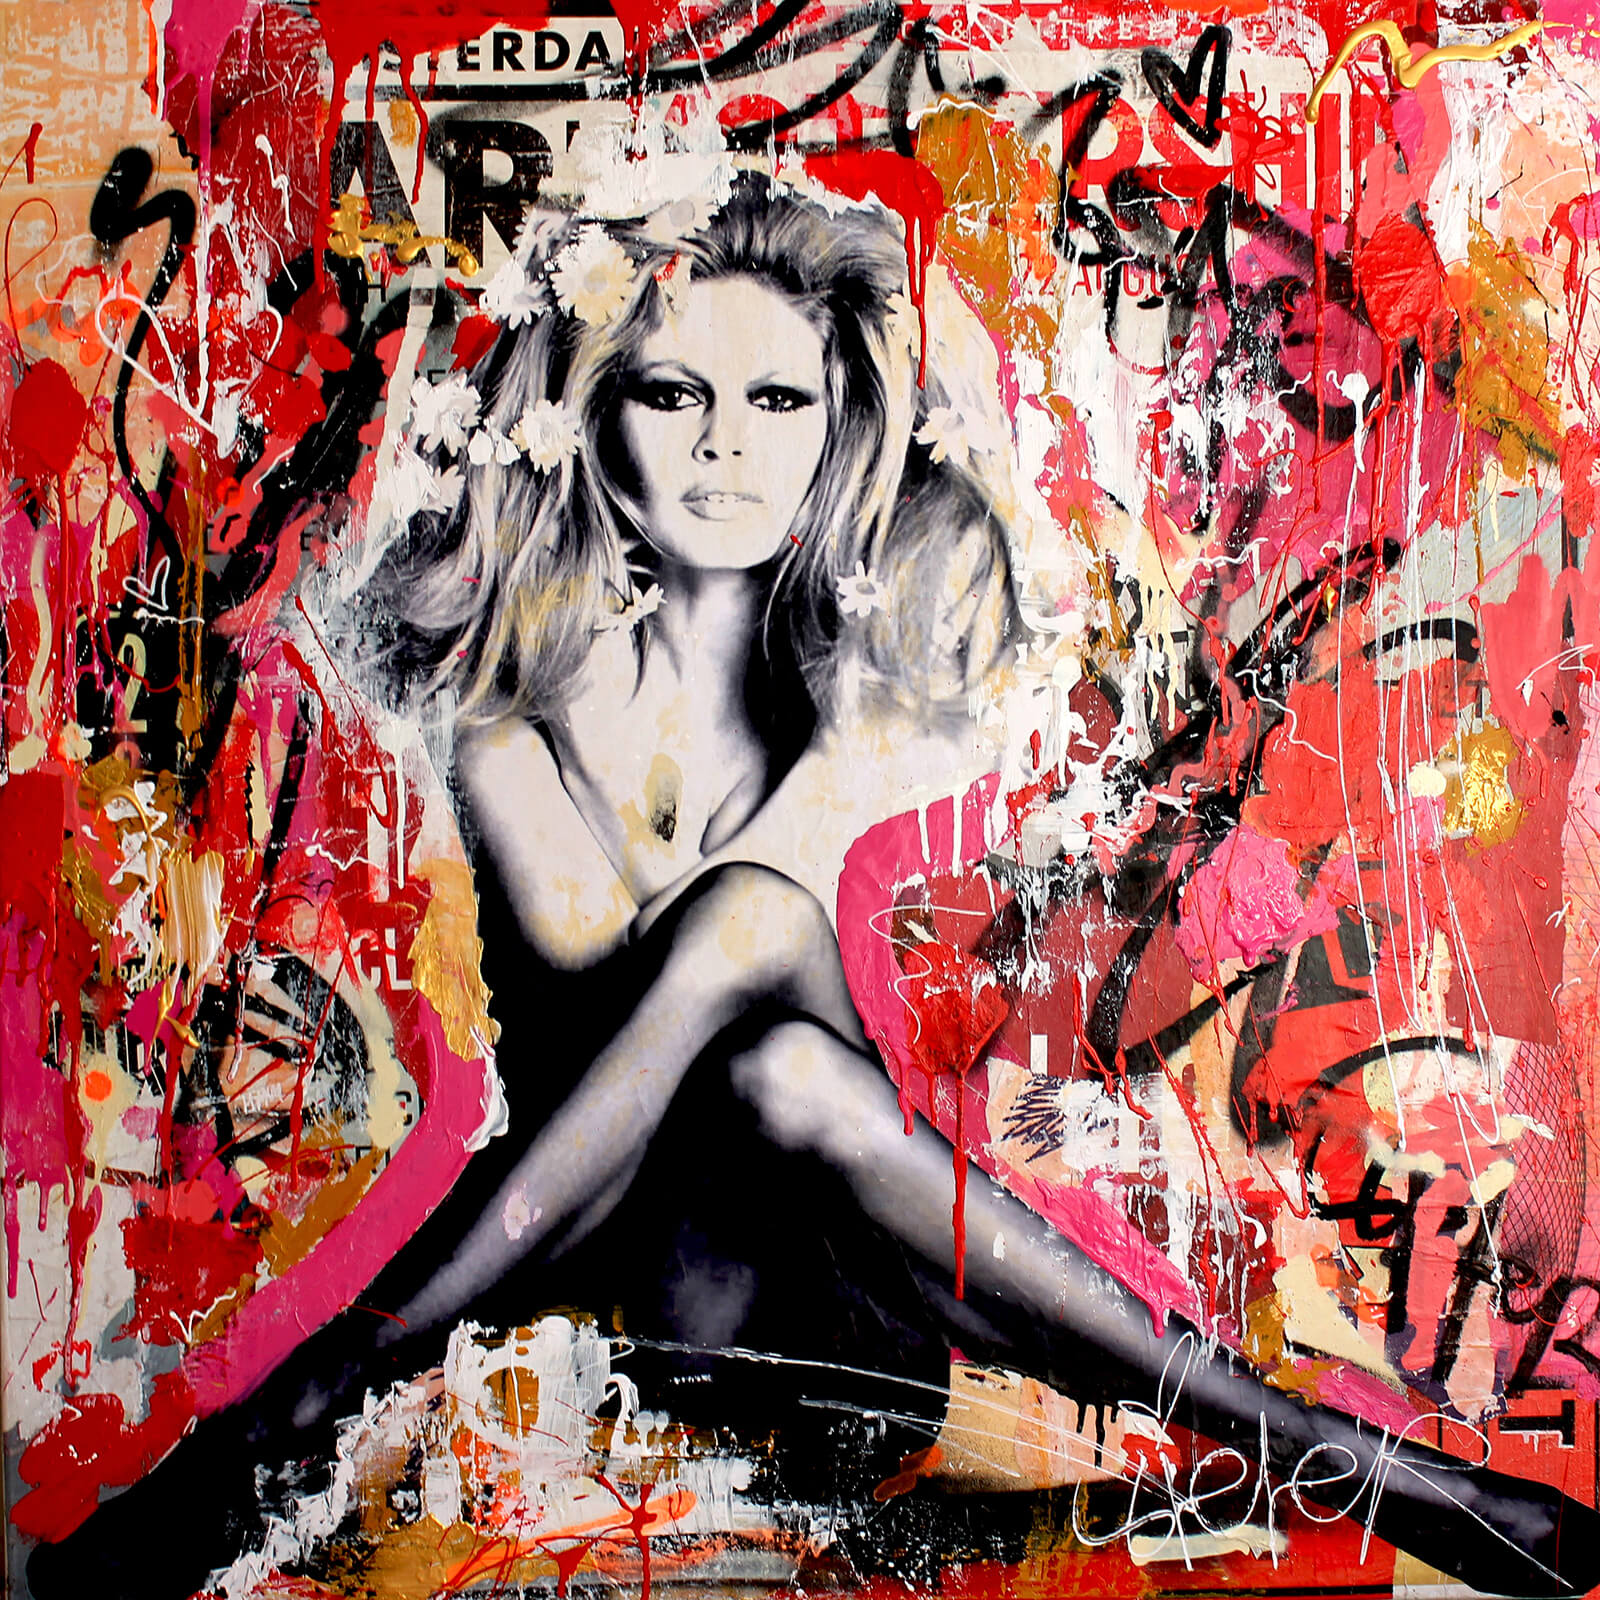 Motiv Brigitte Bardot XXL110x144,7 cm Arcylglas 5 mm PopArt/Poster/StreetArt